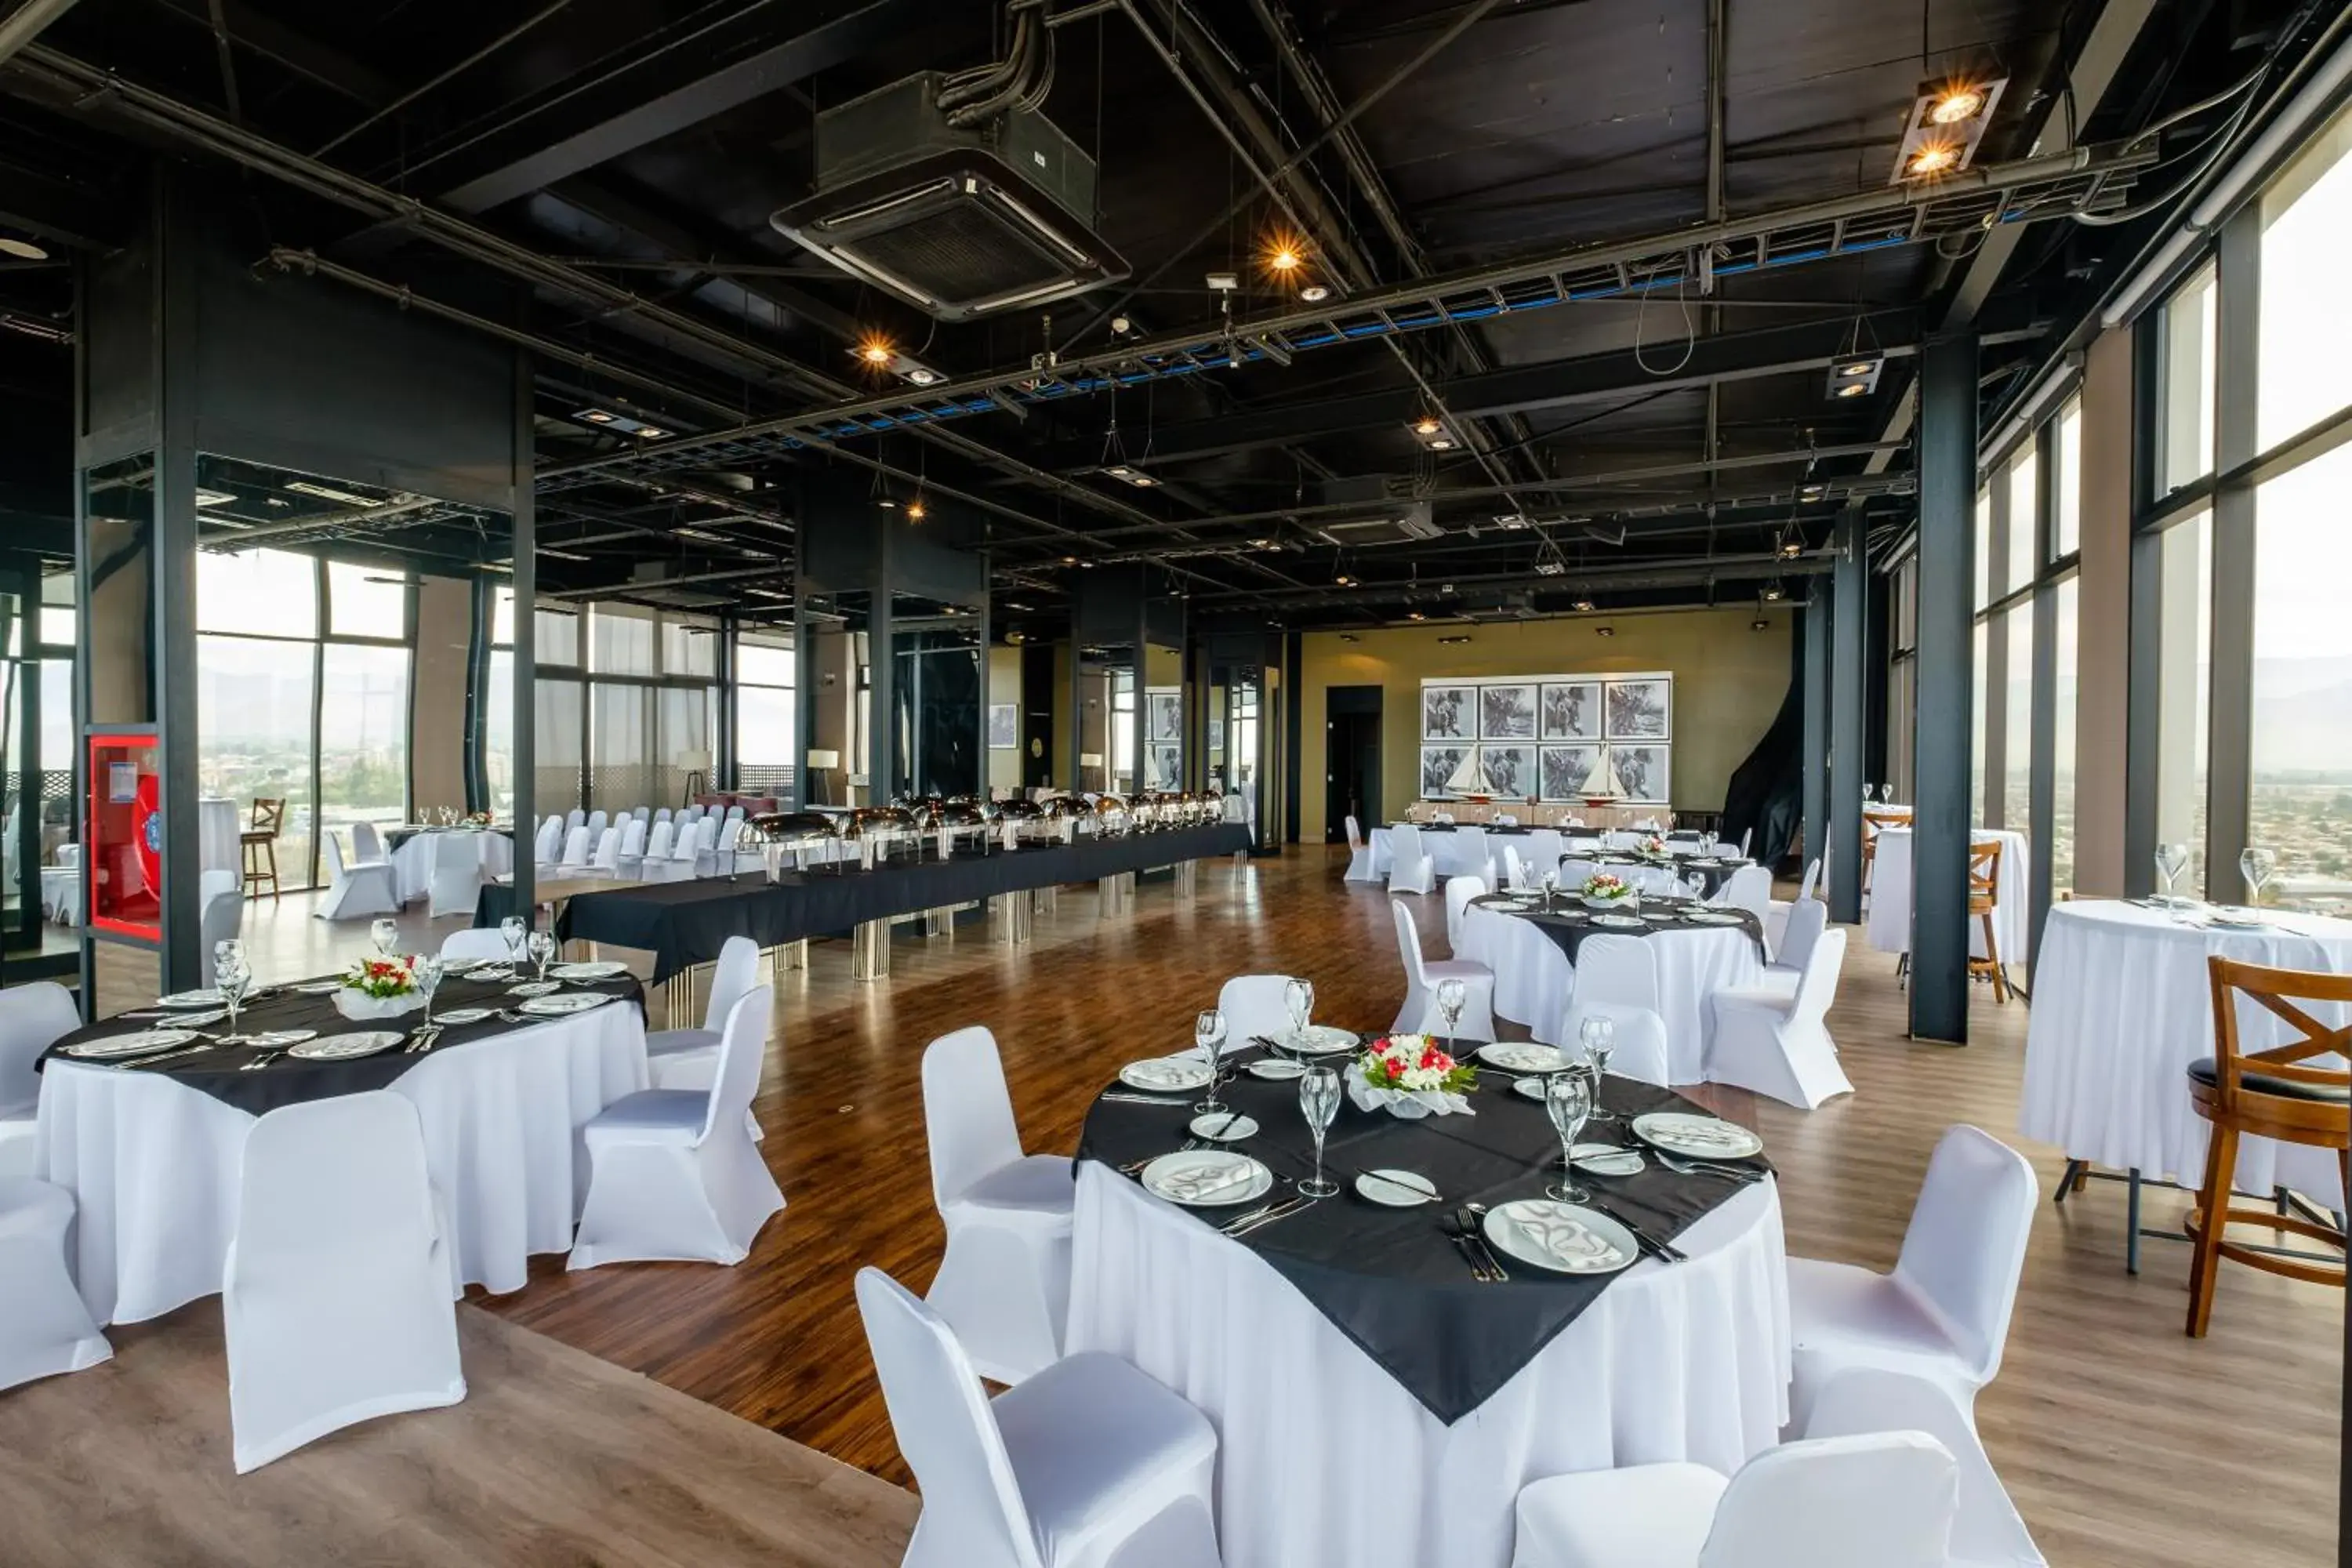 Banquet/Function facilities, Banquet Facilities in Hotel Terrado Rancagua